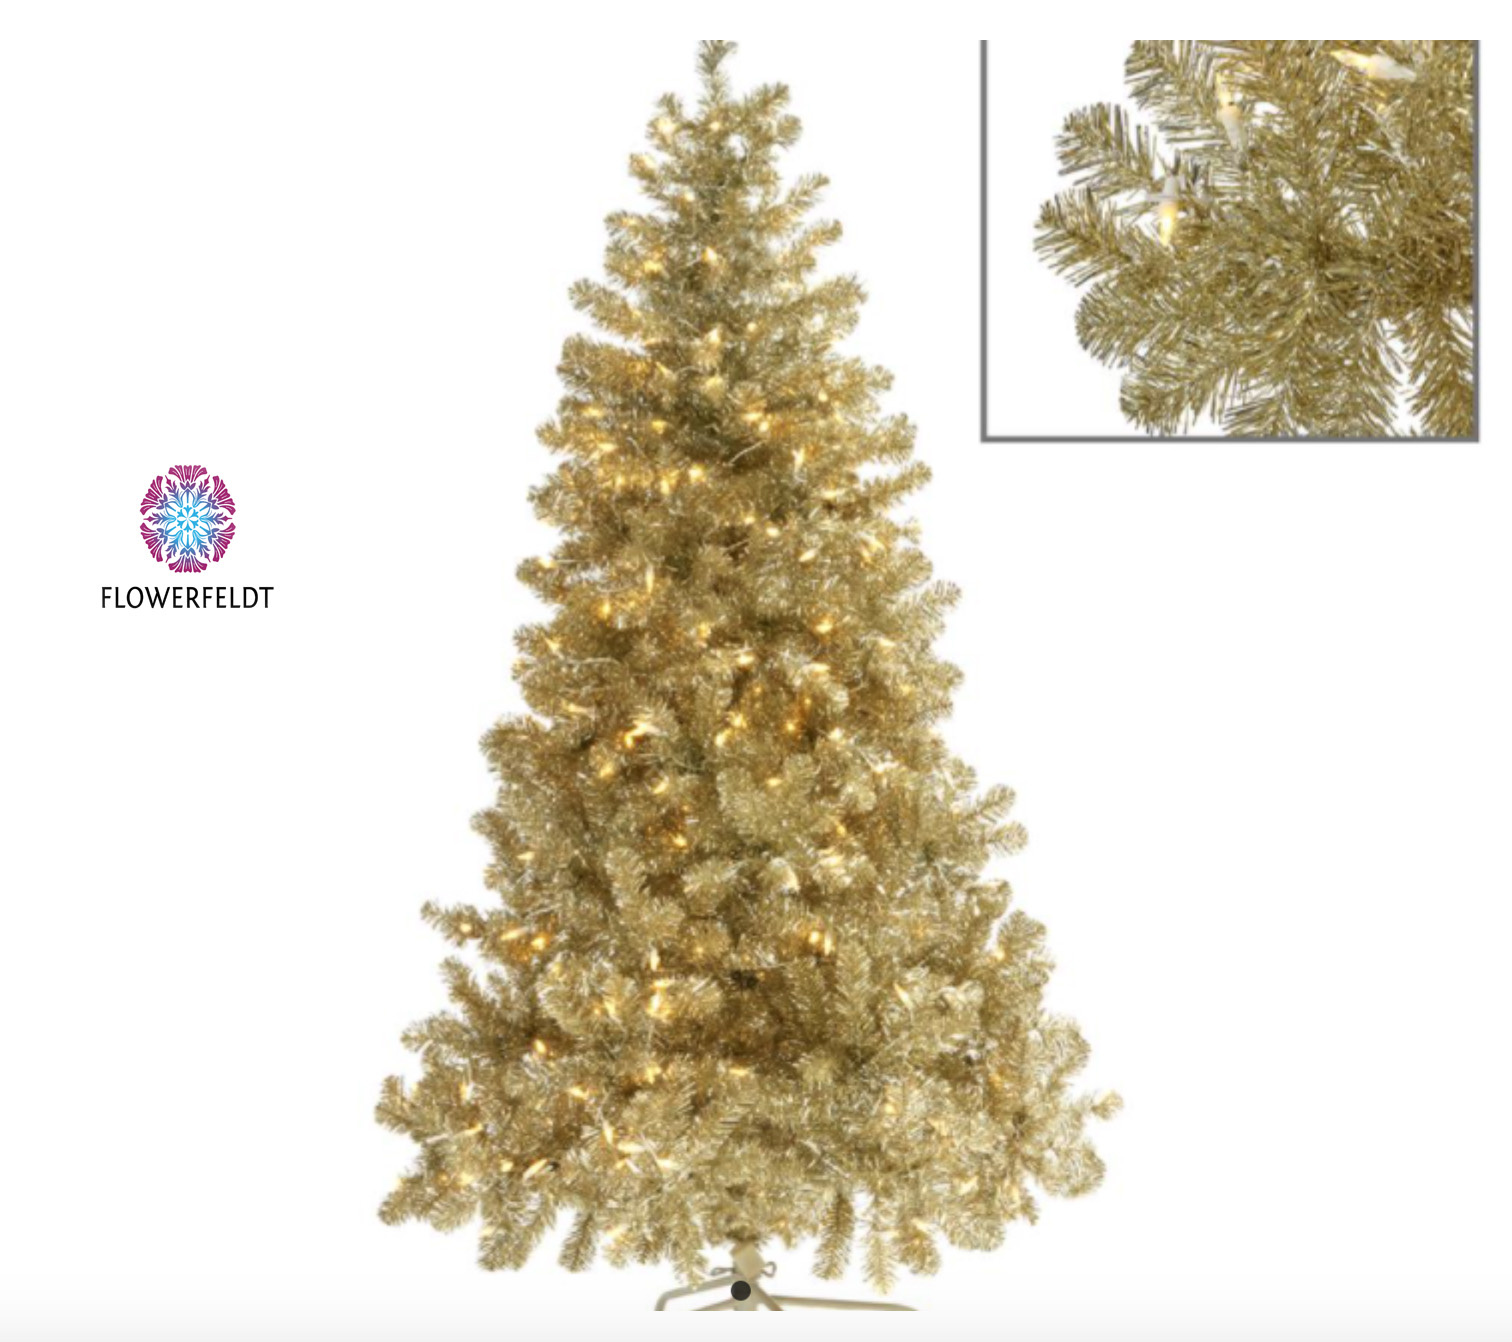 lijden vloek accent Gouden kerstboom - Gouden kerstbomen kopen? Flowerfeldt.com - Flowerfeldt